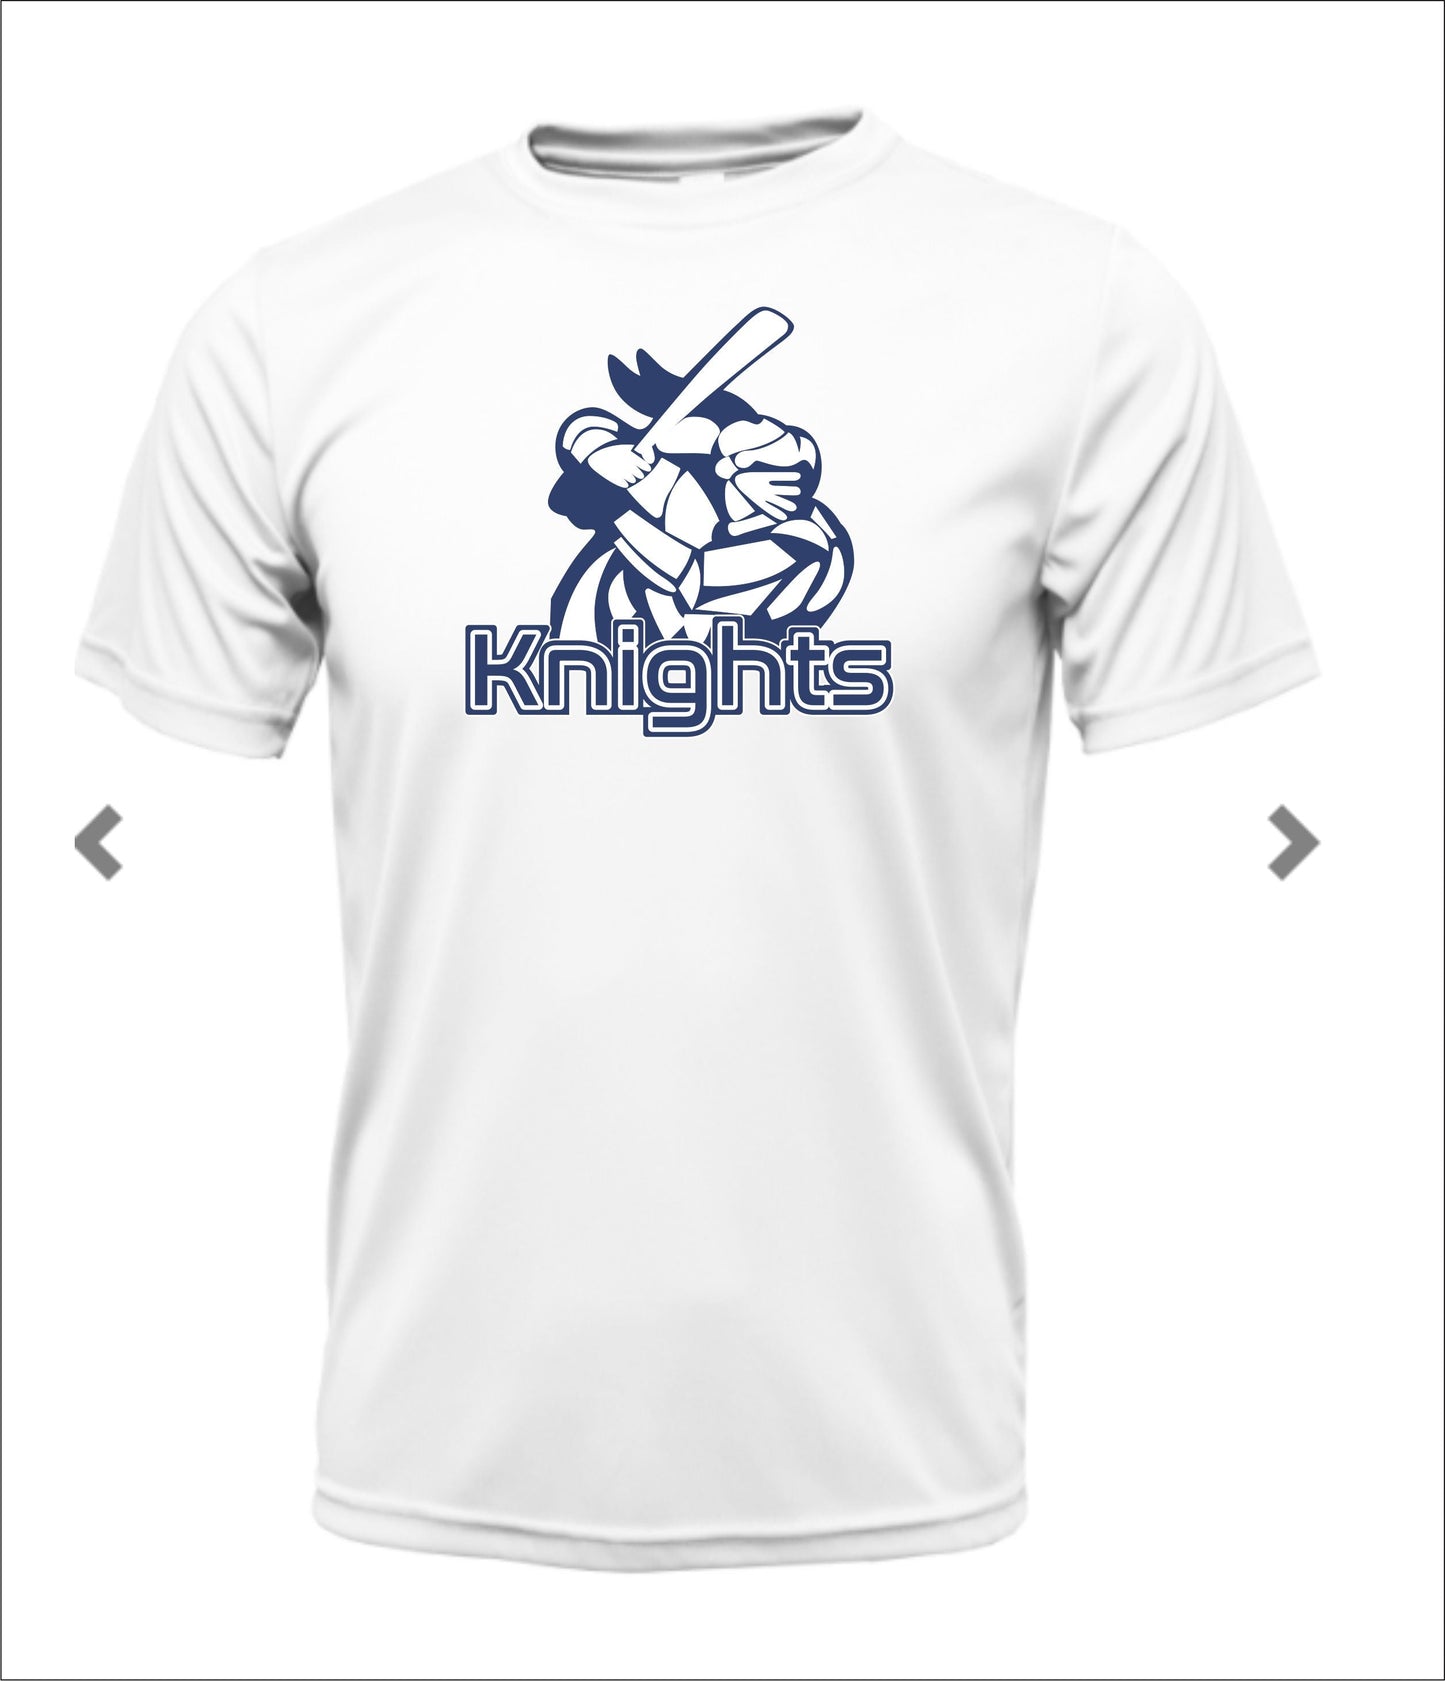 Knight Cotton T-shirt